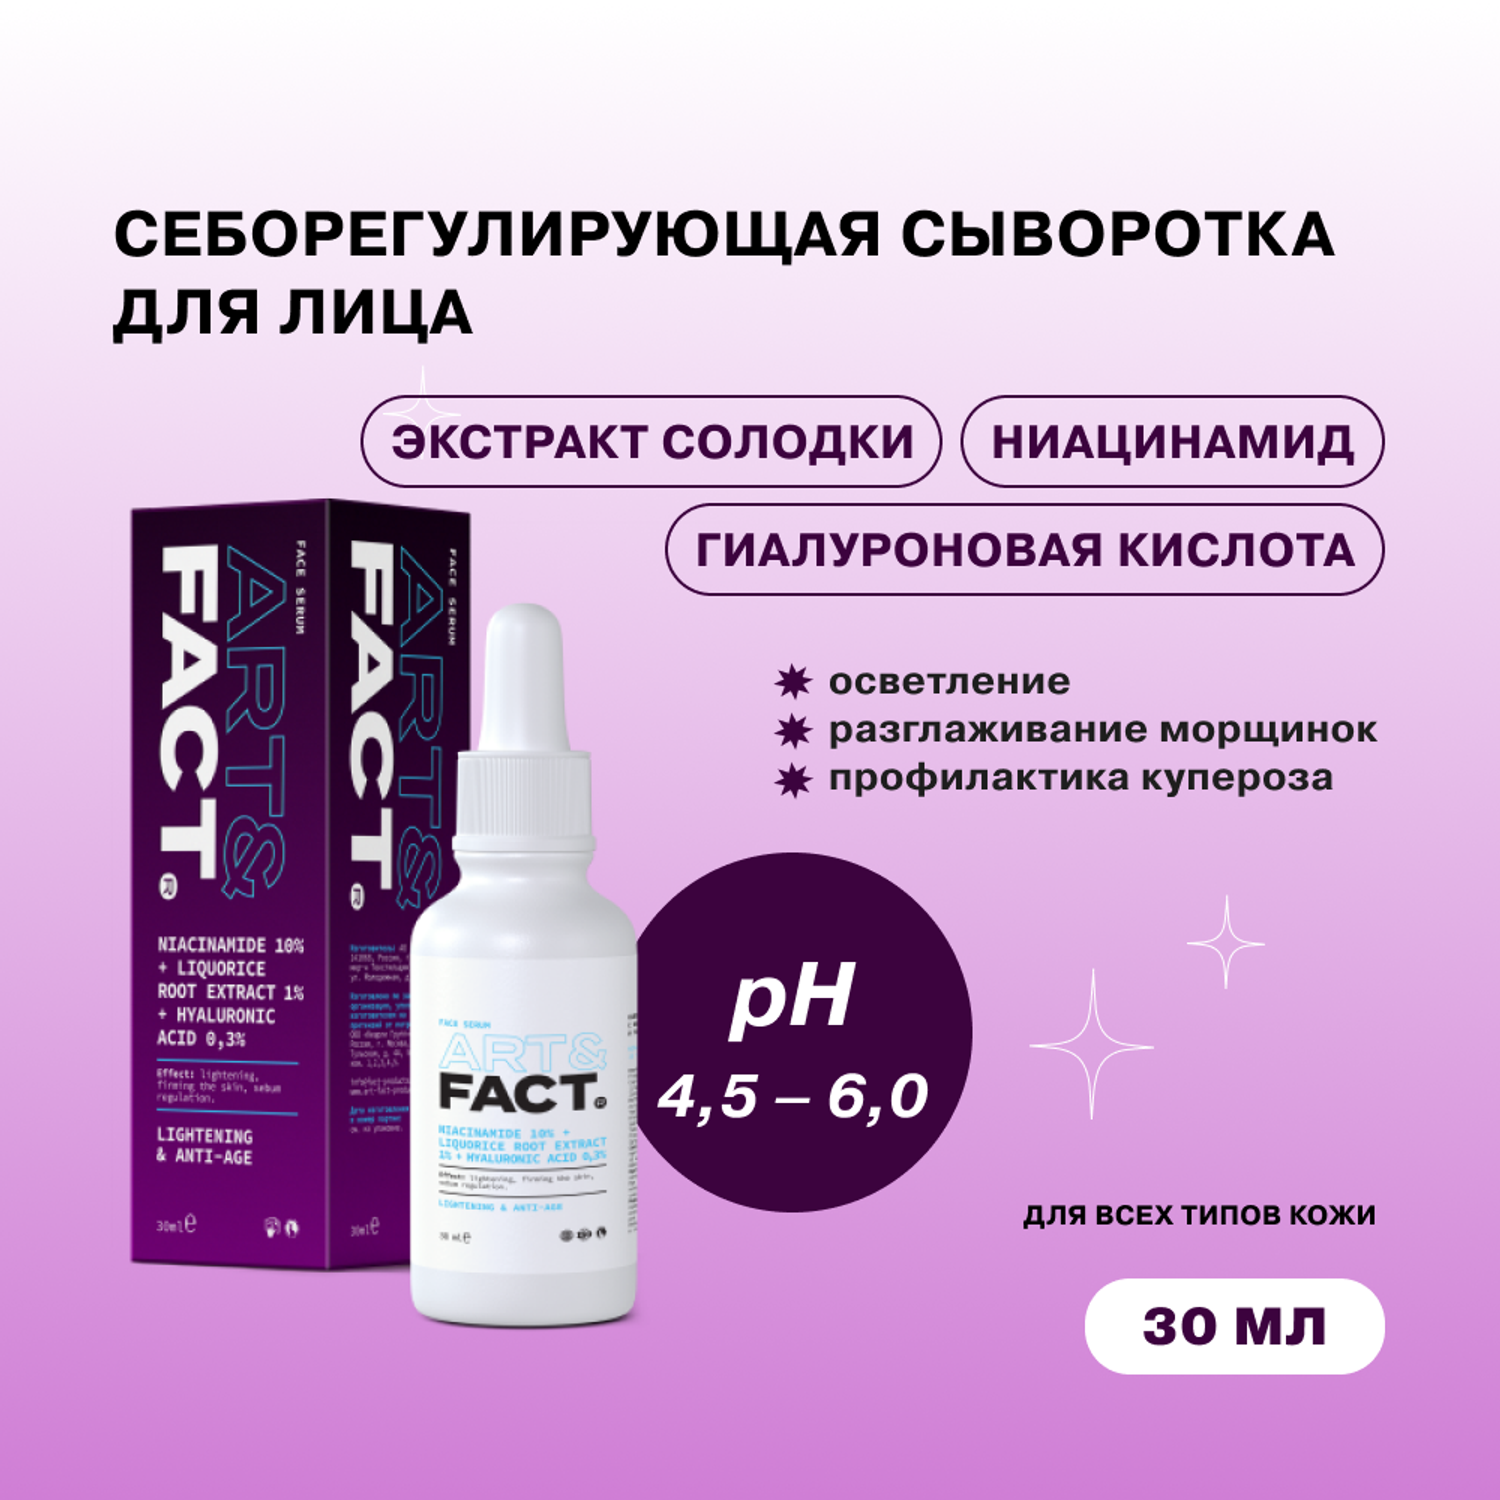 Сыворотка для лица ARTFACT. себорегулирующая с ниацинамидом экстрактом солодки и гиалуроновой кислотой 30 мл - фото 2